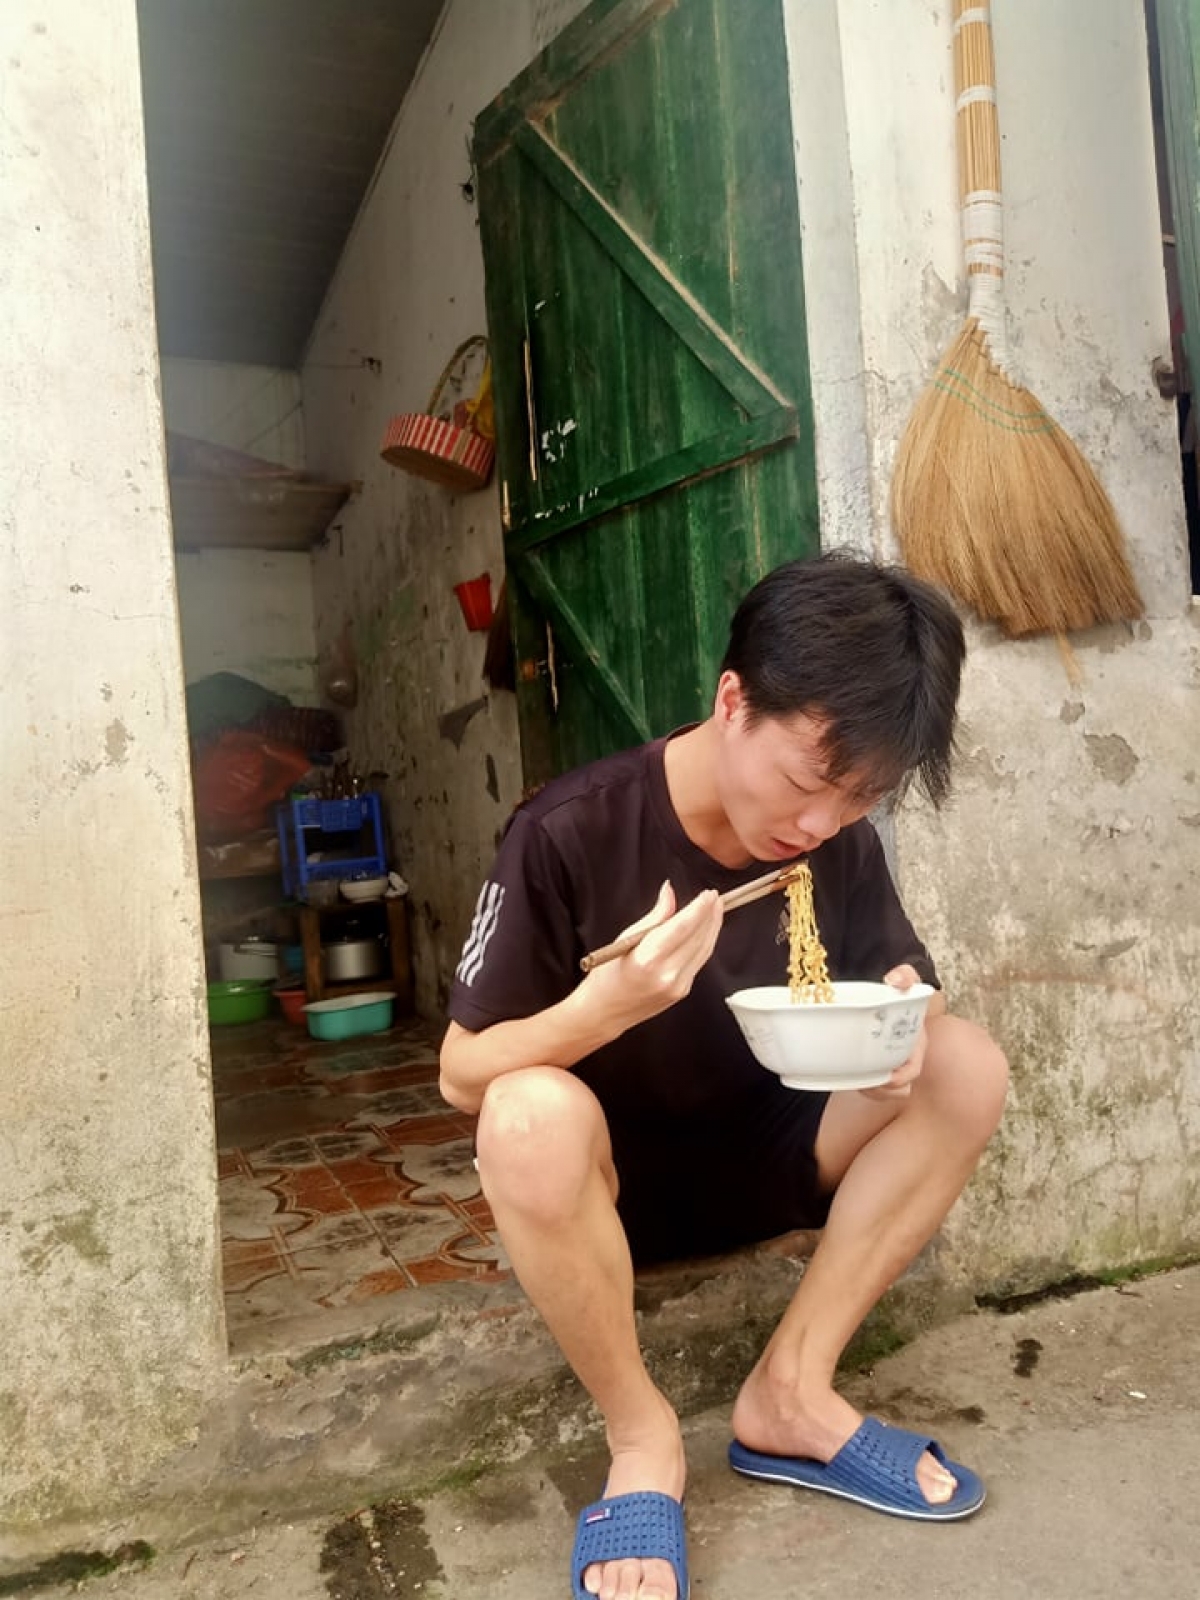 Hoàng Seo Hồng, sinh viên năm nhất, Khoa Lịch sử, Trường ĐH Sư Phạm Hà Nội, quê ở Mường Lát, Thanh Hóa ăn tạm bát mì chay chống đói